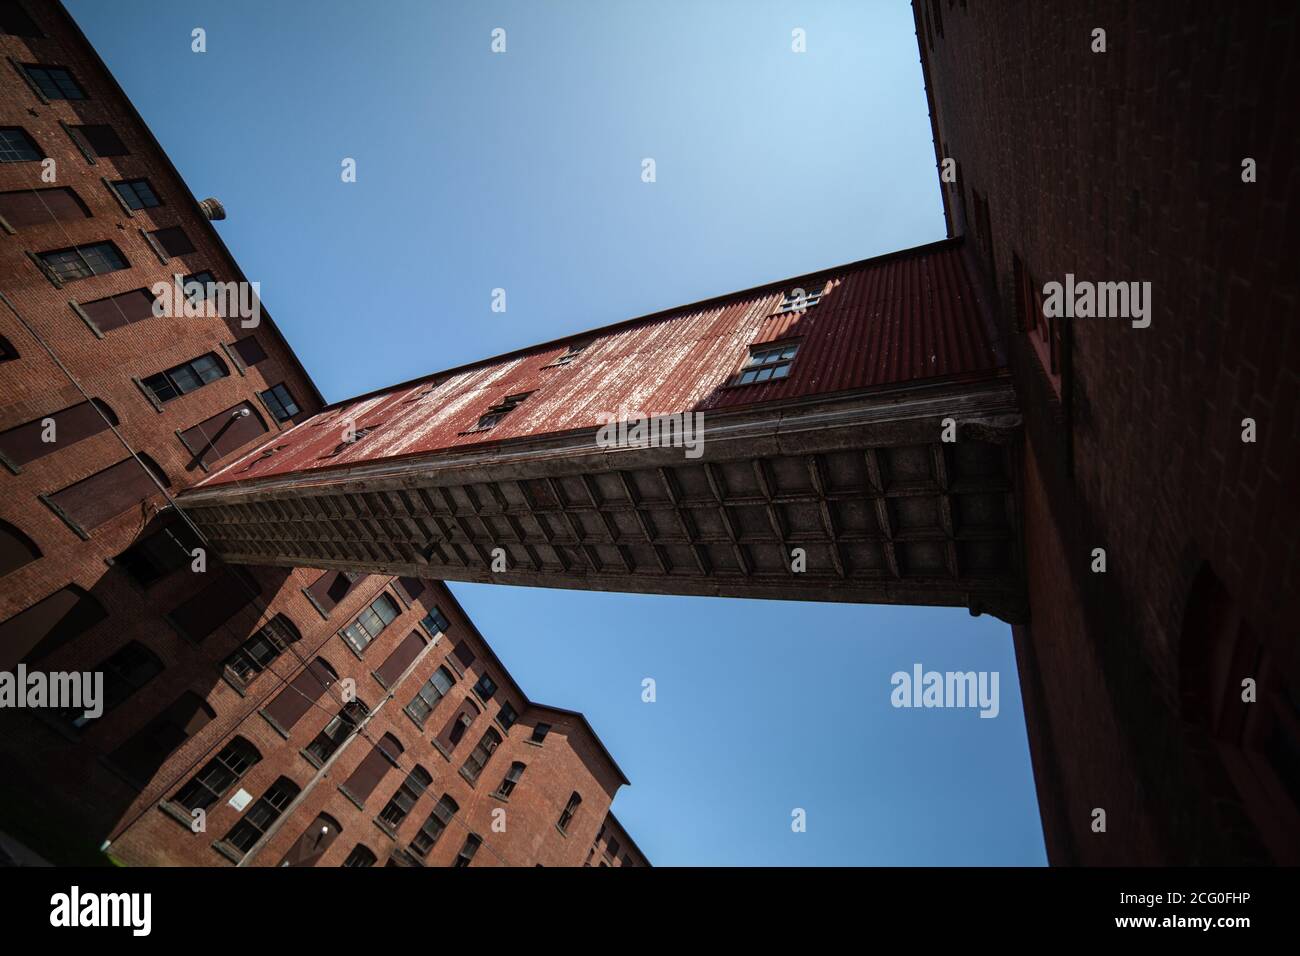 Die Verbindung oder der Gang zwischen zwei roten Ziegelsteingebäuden mit genagelten Fenstern - Ansicht von unten, und blauer klarer Himmel im Hintergrund Stockfoto